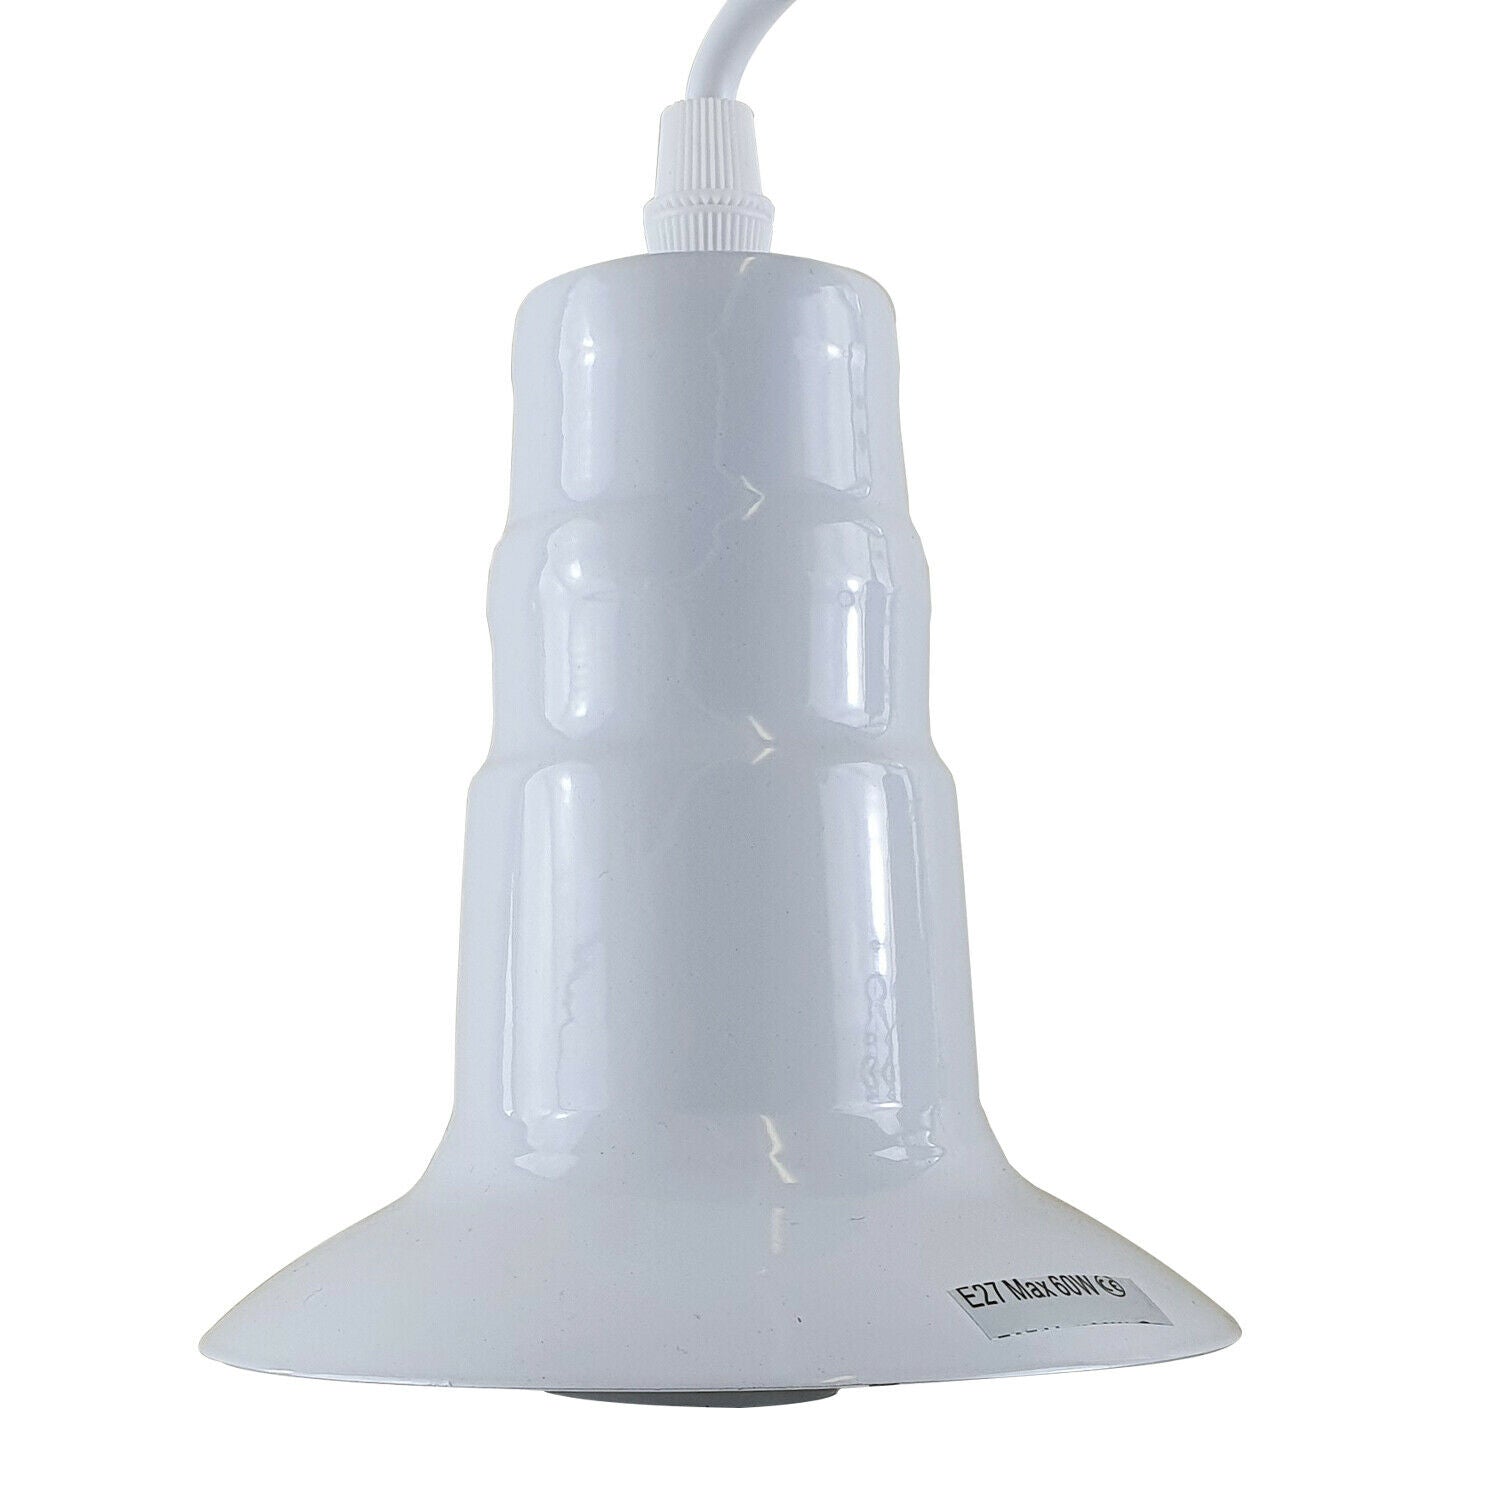 White Ceiling Light Fitting Industrial Pendant Lamp Bulb Holder~1678 - LEDSone UK Ltd